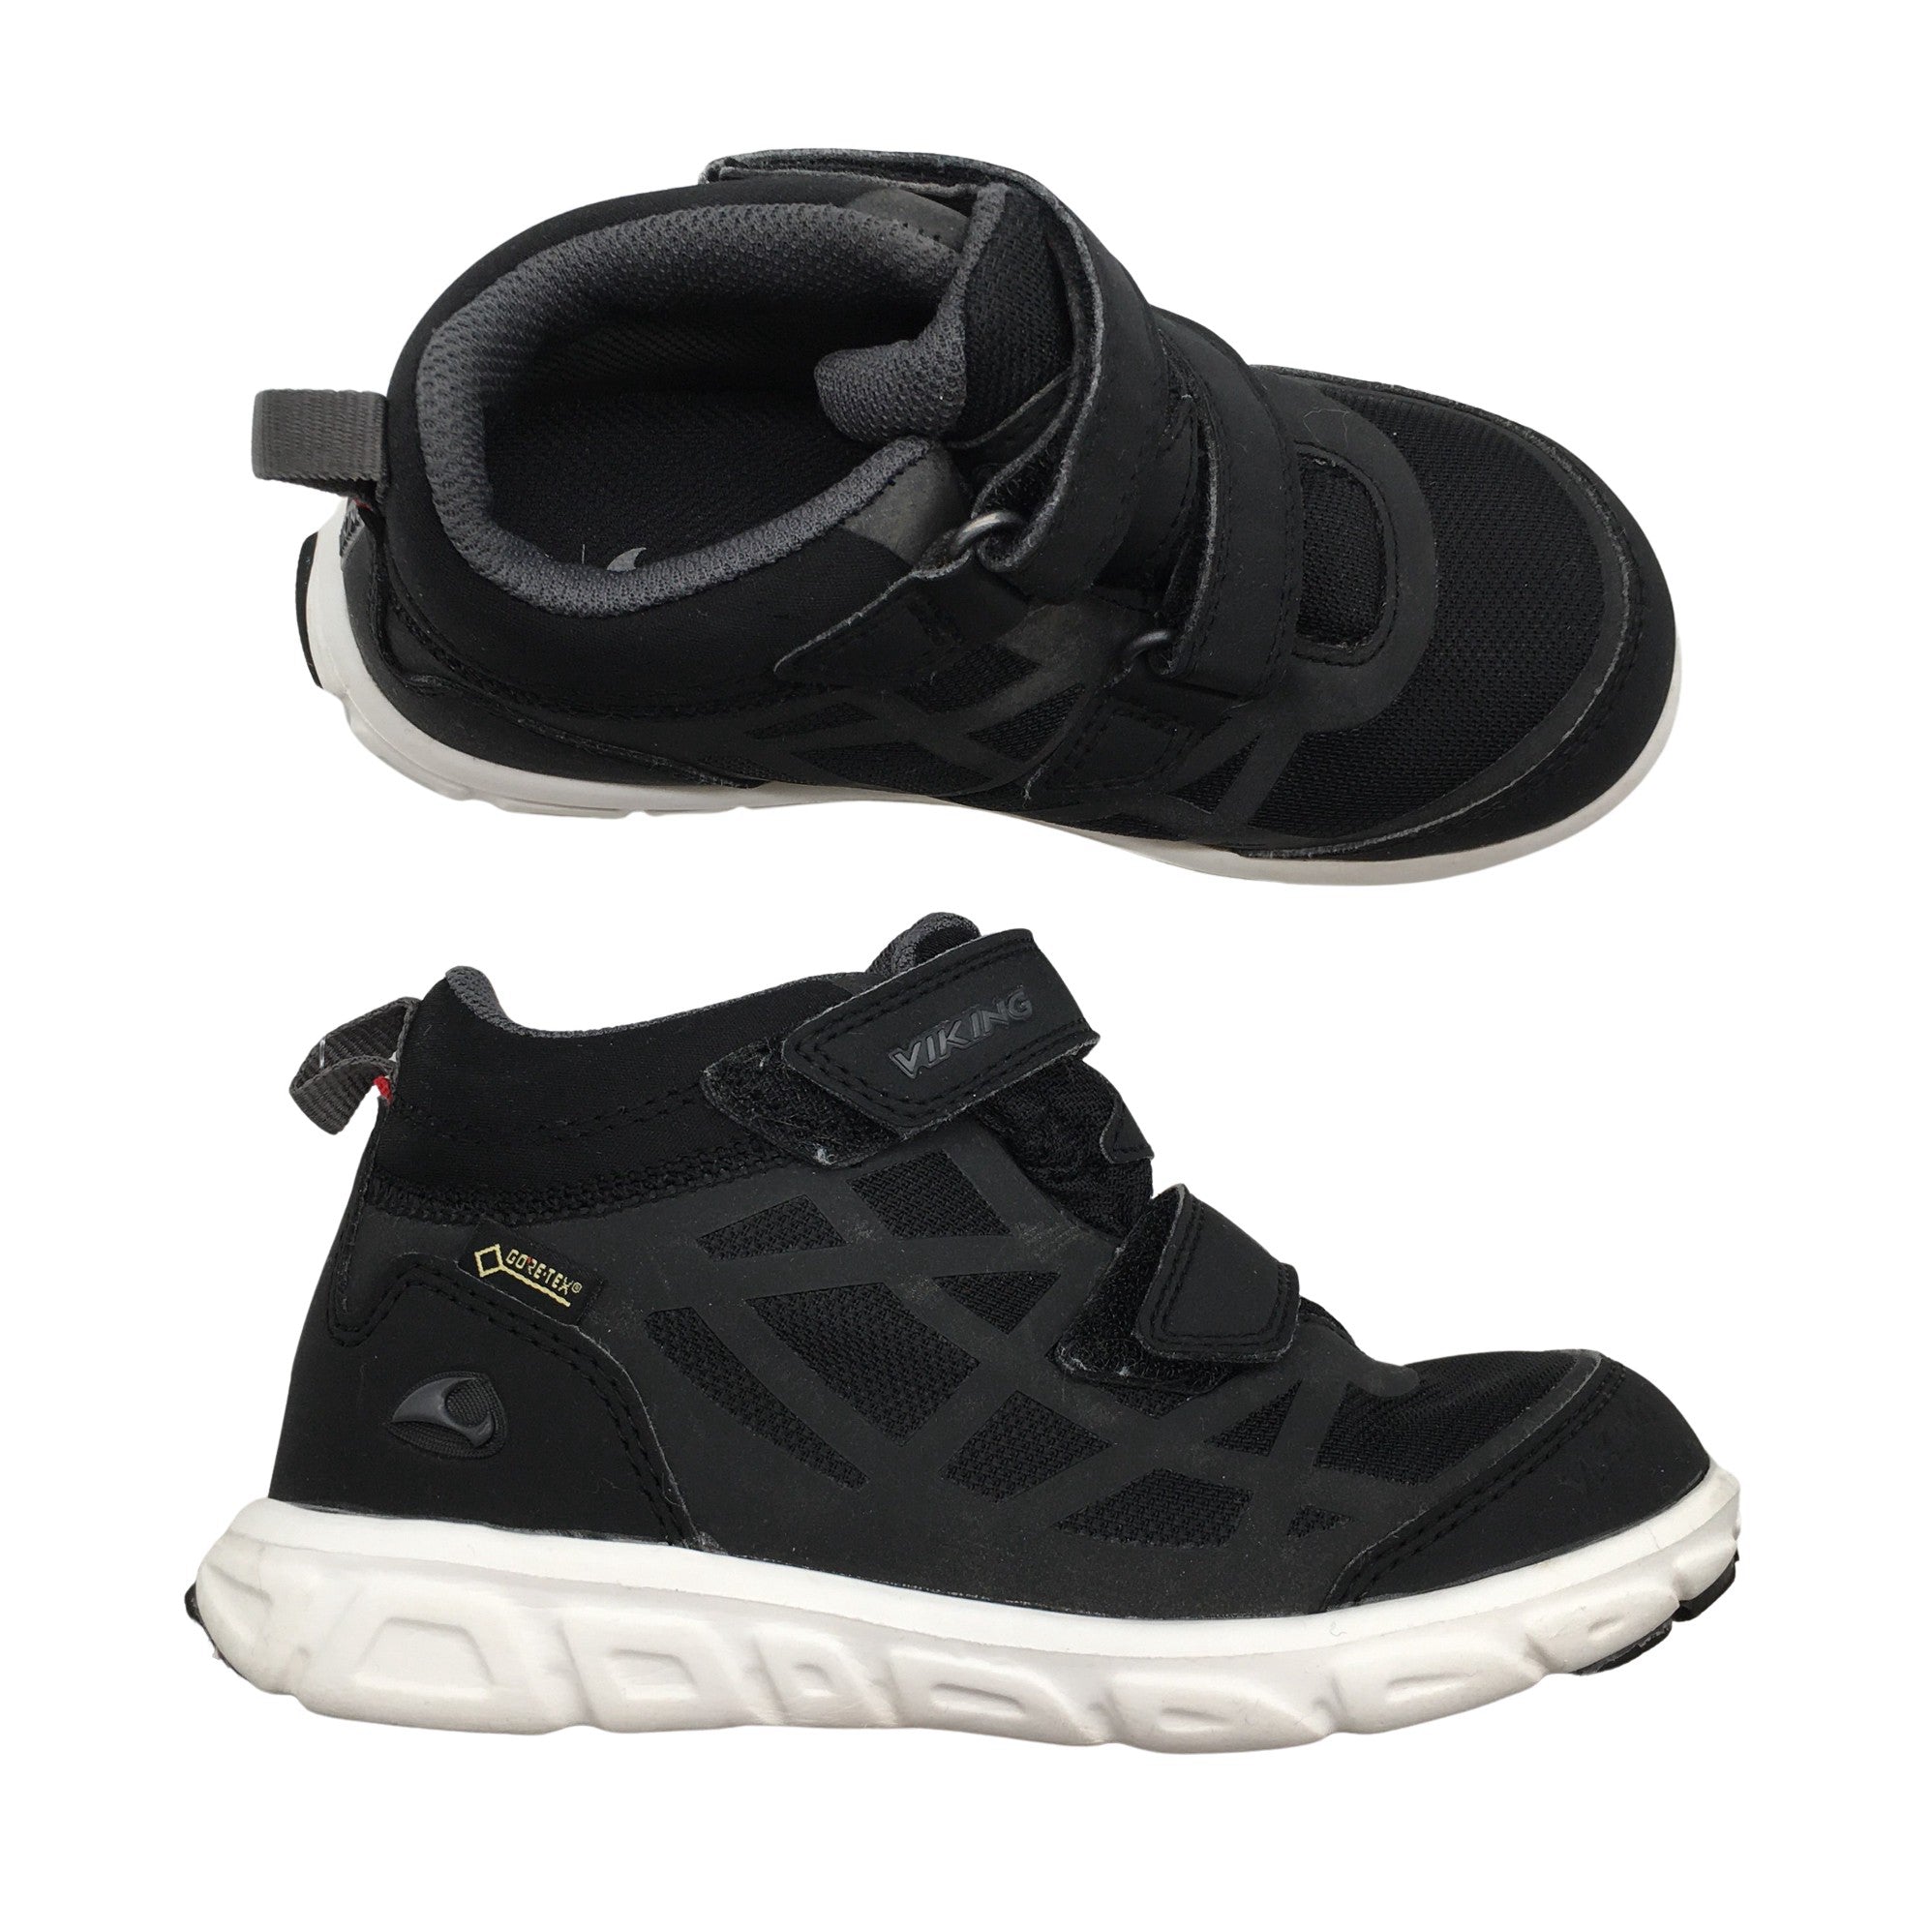 Unisex Viking Spring/Fall shoes, size 31 (Black) Emmy